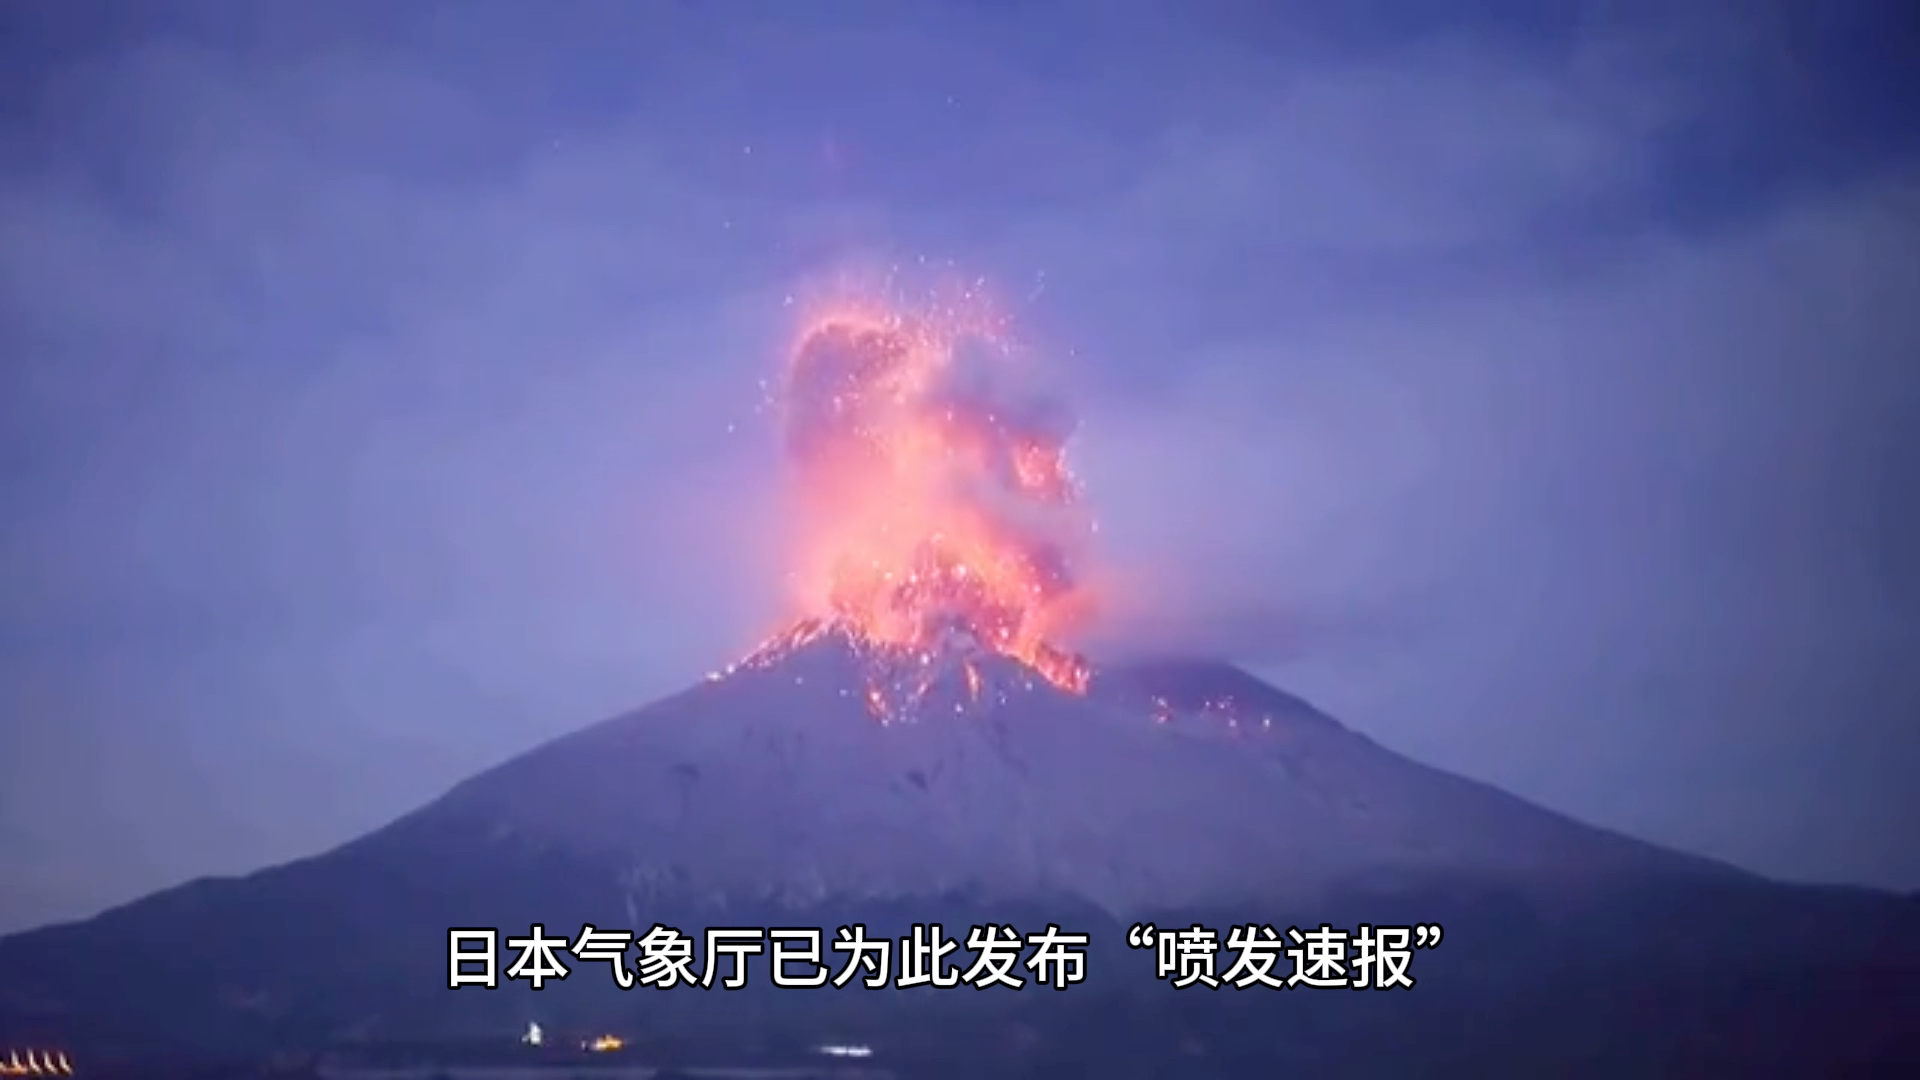 日本火山喷发最新消息图片